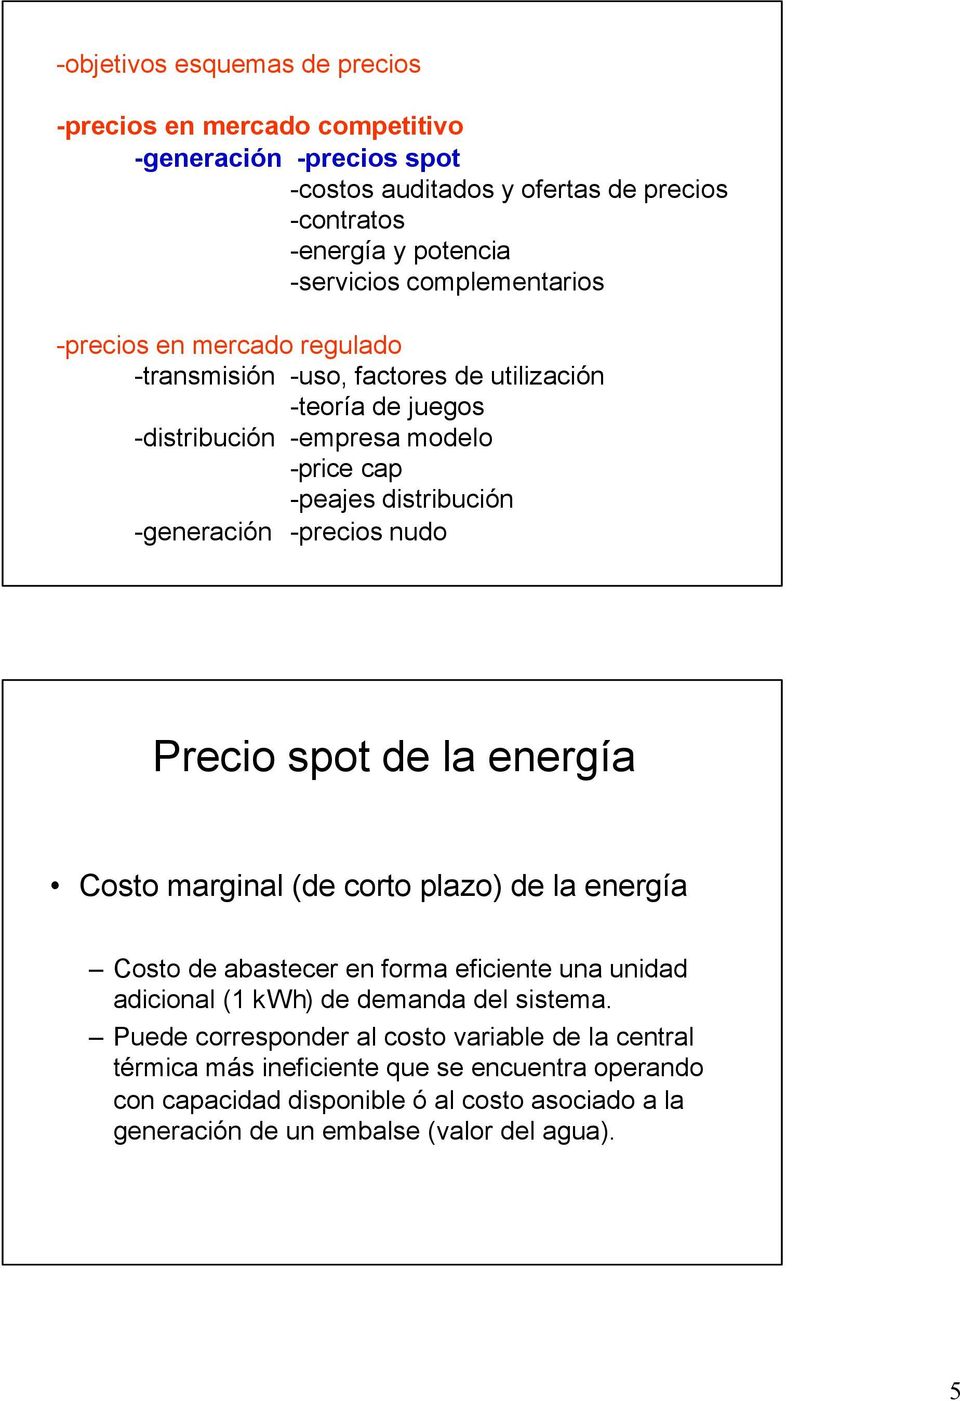 -precios nudo Precio spot de la energía Costo marginal (de corto plazo) de la energía Costo de abastecer en forma eficiente una unidad adicional (1 kwh) de demanda del sistema.